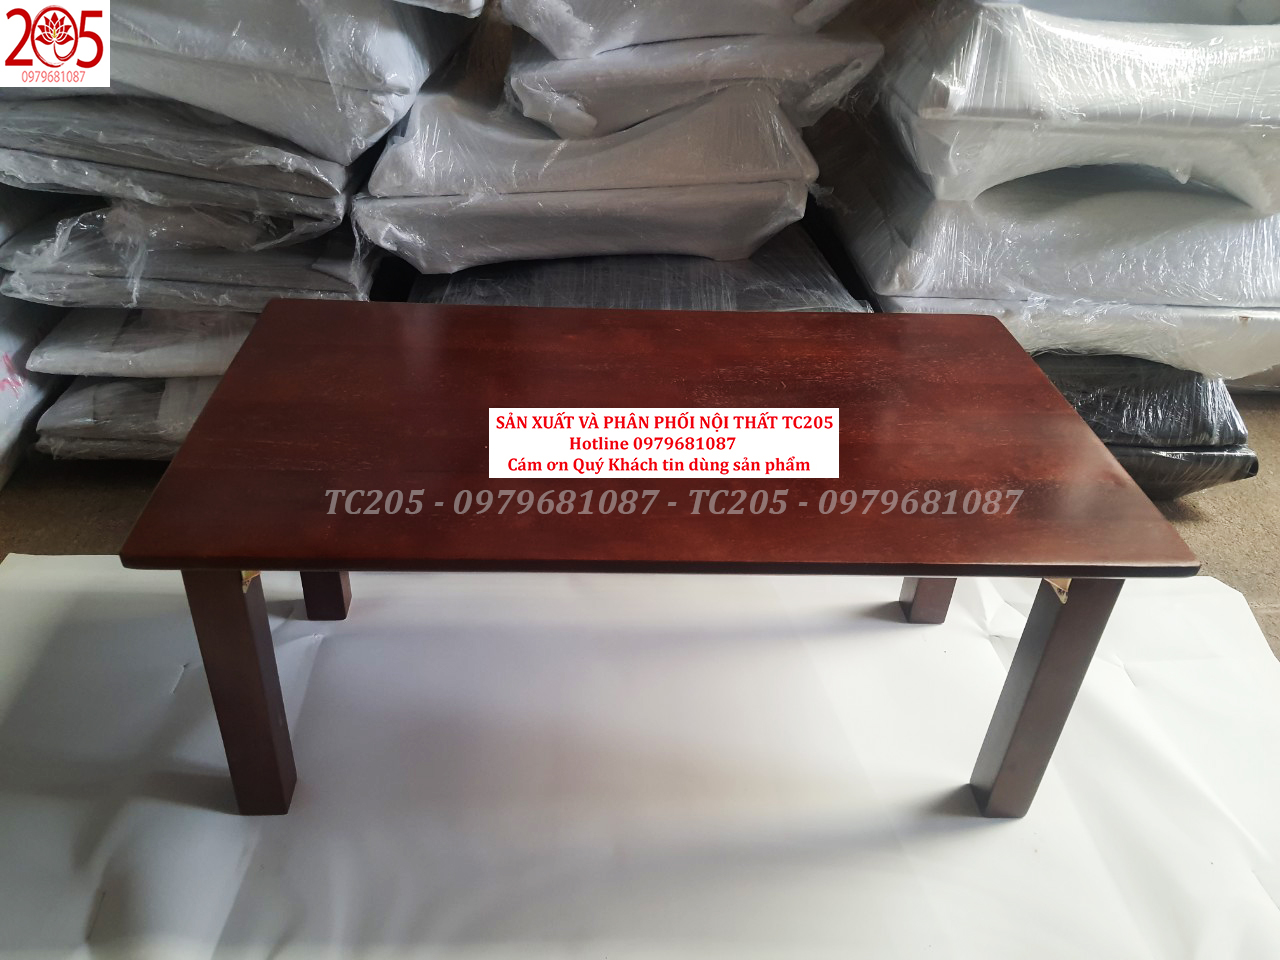 BÀN XẾP CHÂN VUÔNG GỖ CAO SU 70x40x30cm MÀU NÂU - 205TC Folding wooden table